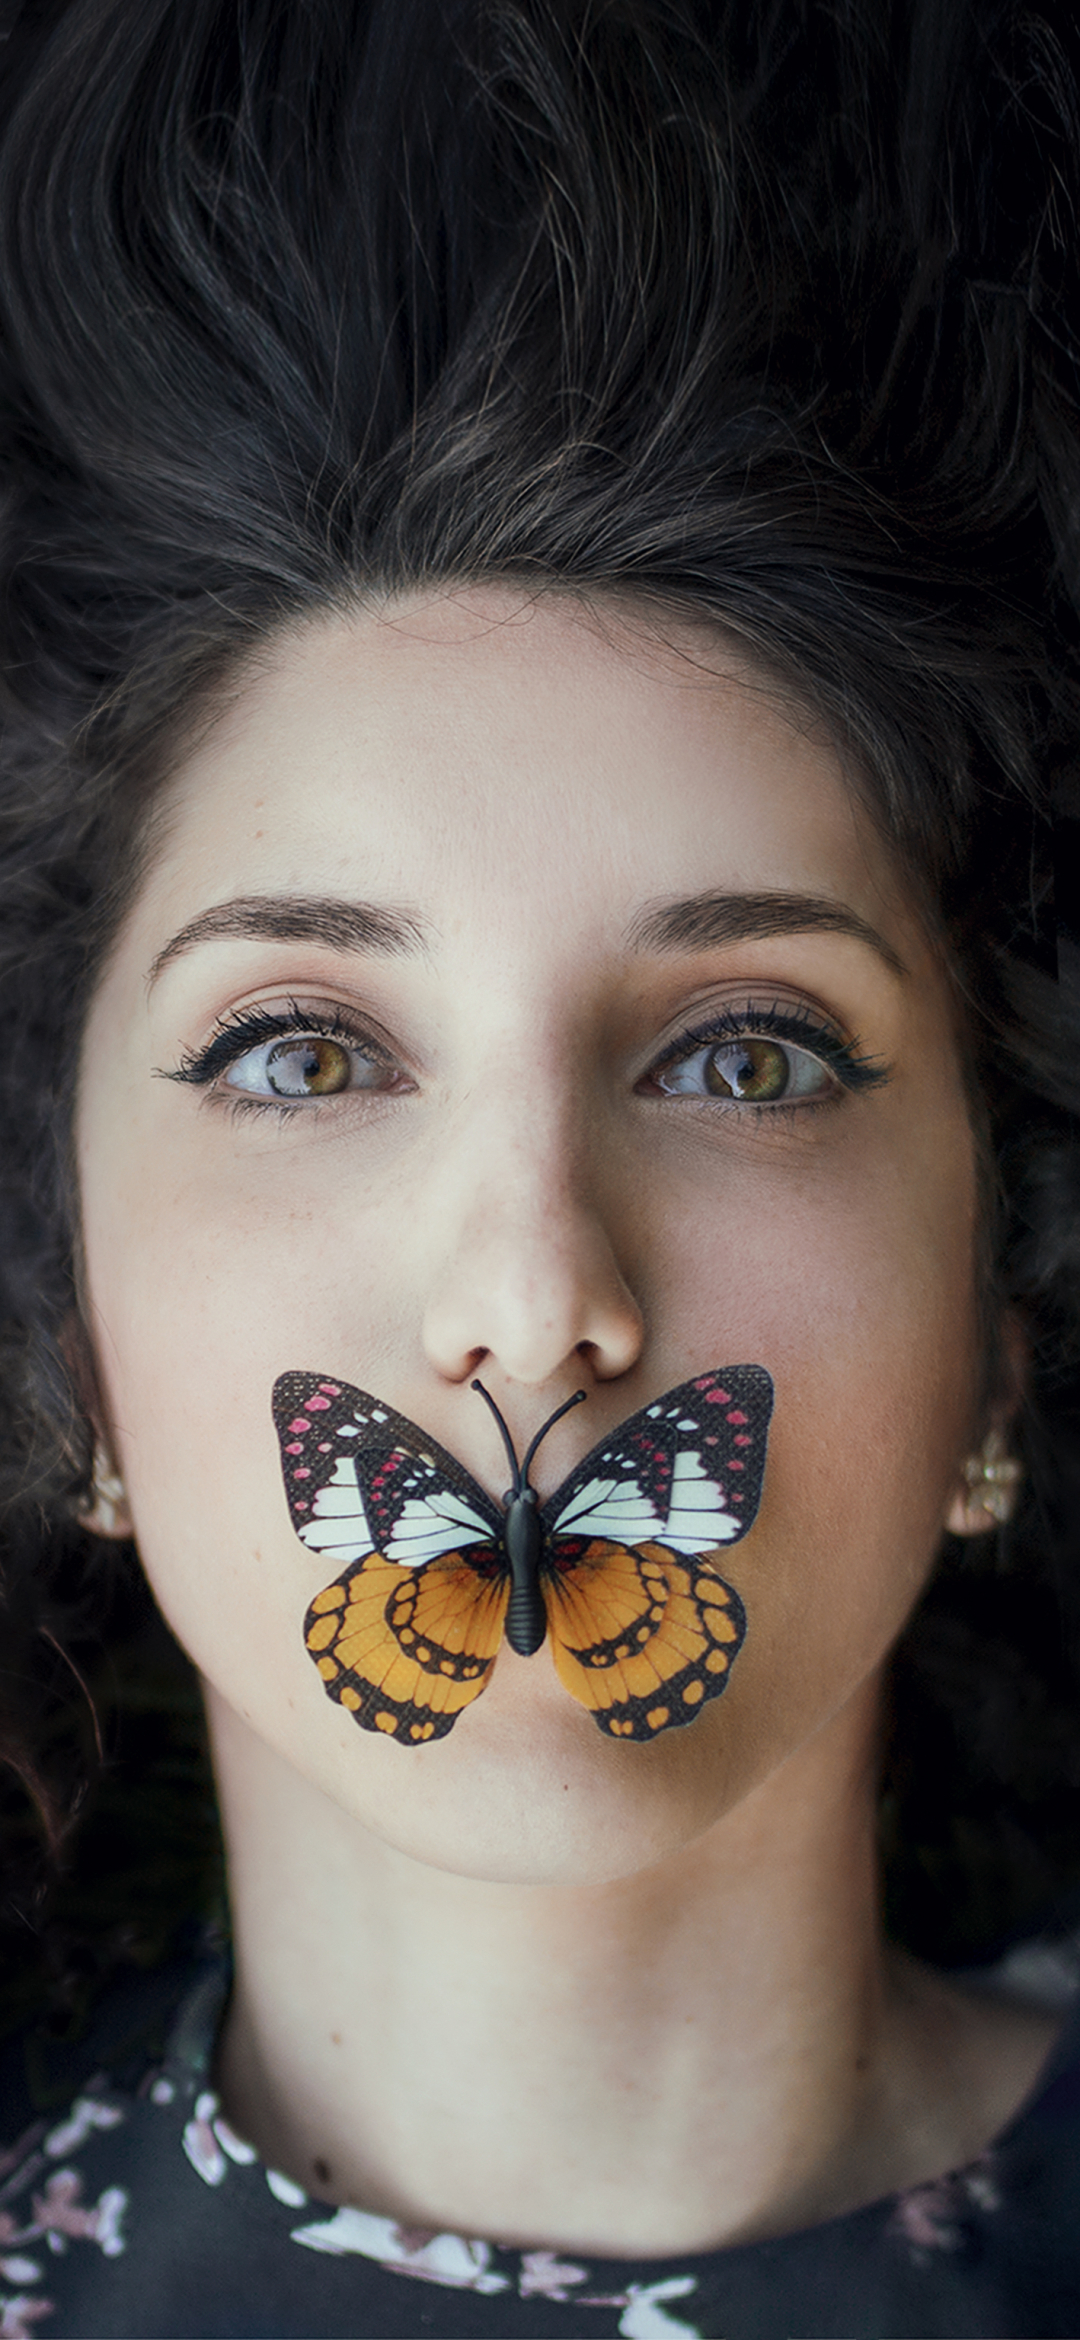 Download mobile wallpaper Butterfly, Face, Model, Women, Black Hair, Hazel Eyes for free.